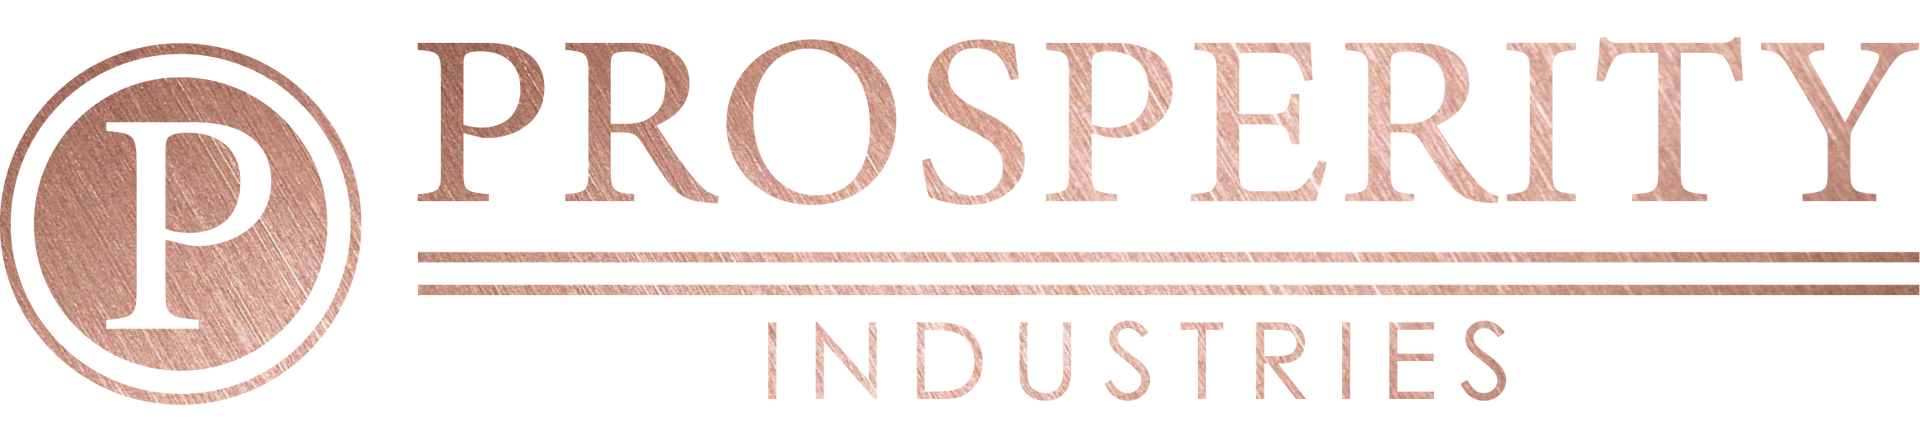 Prosperity Industries logo